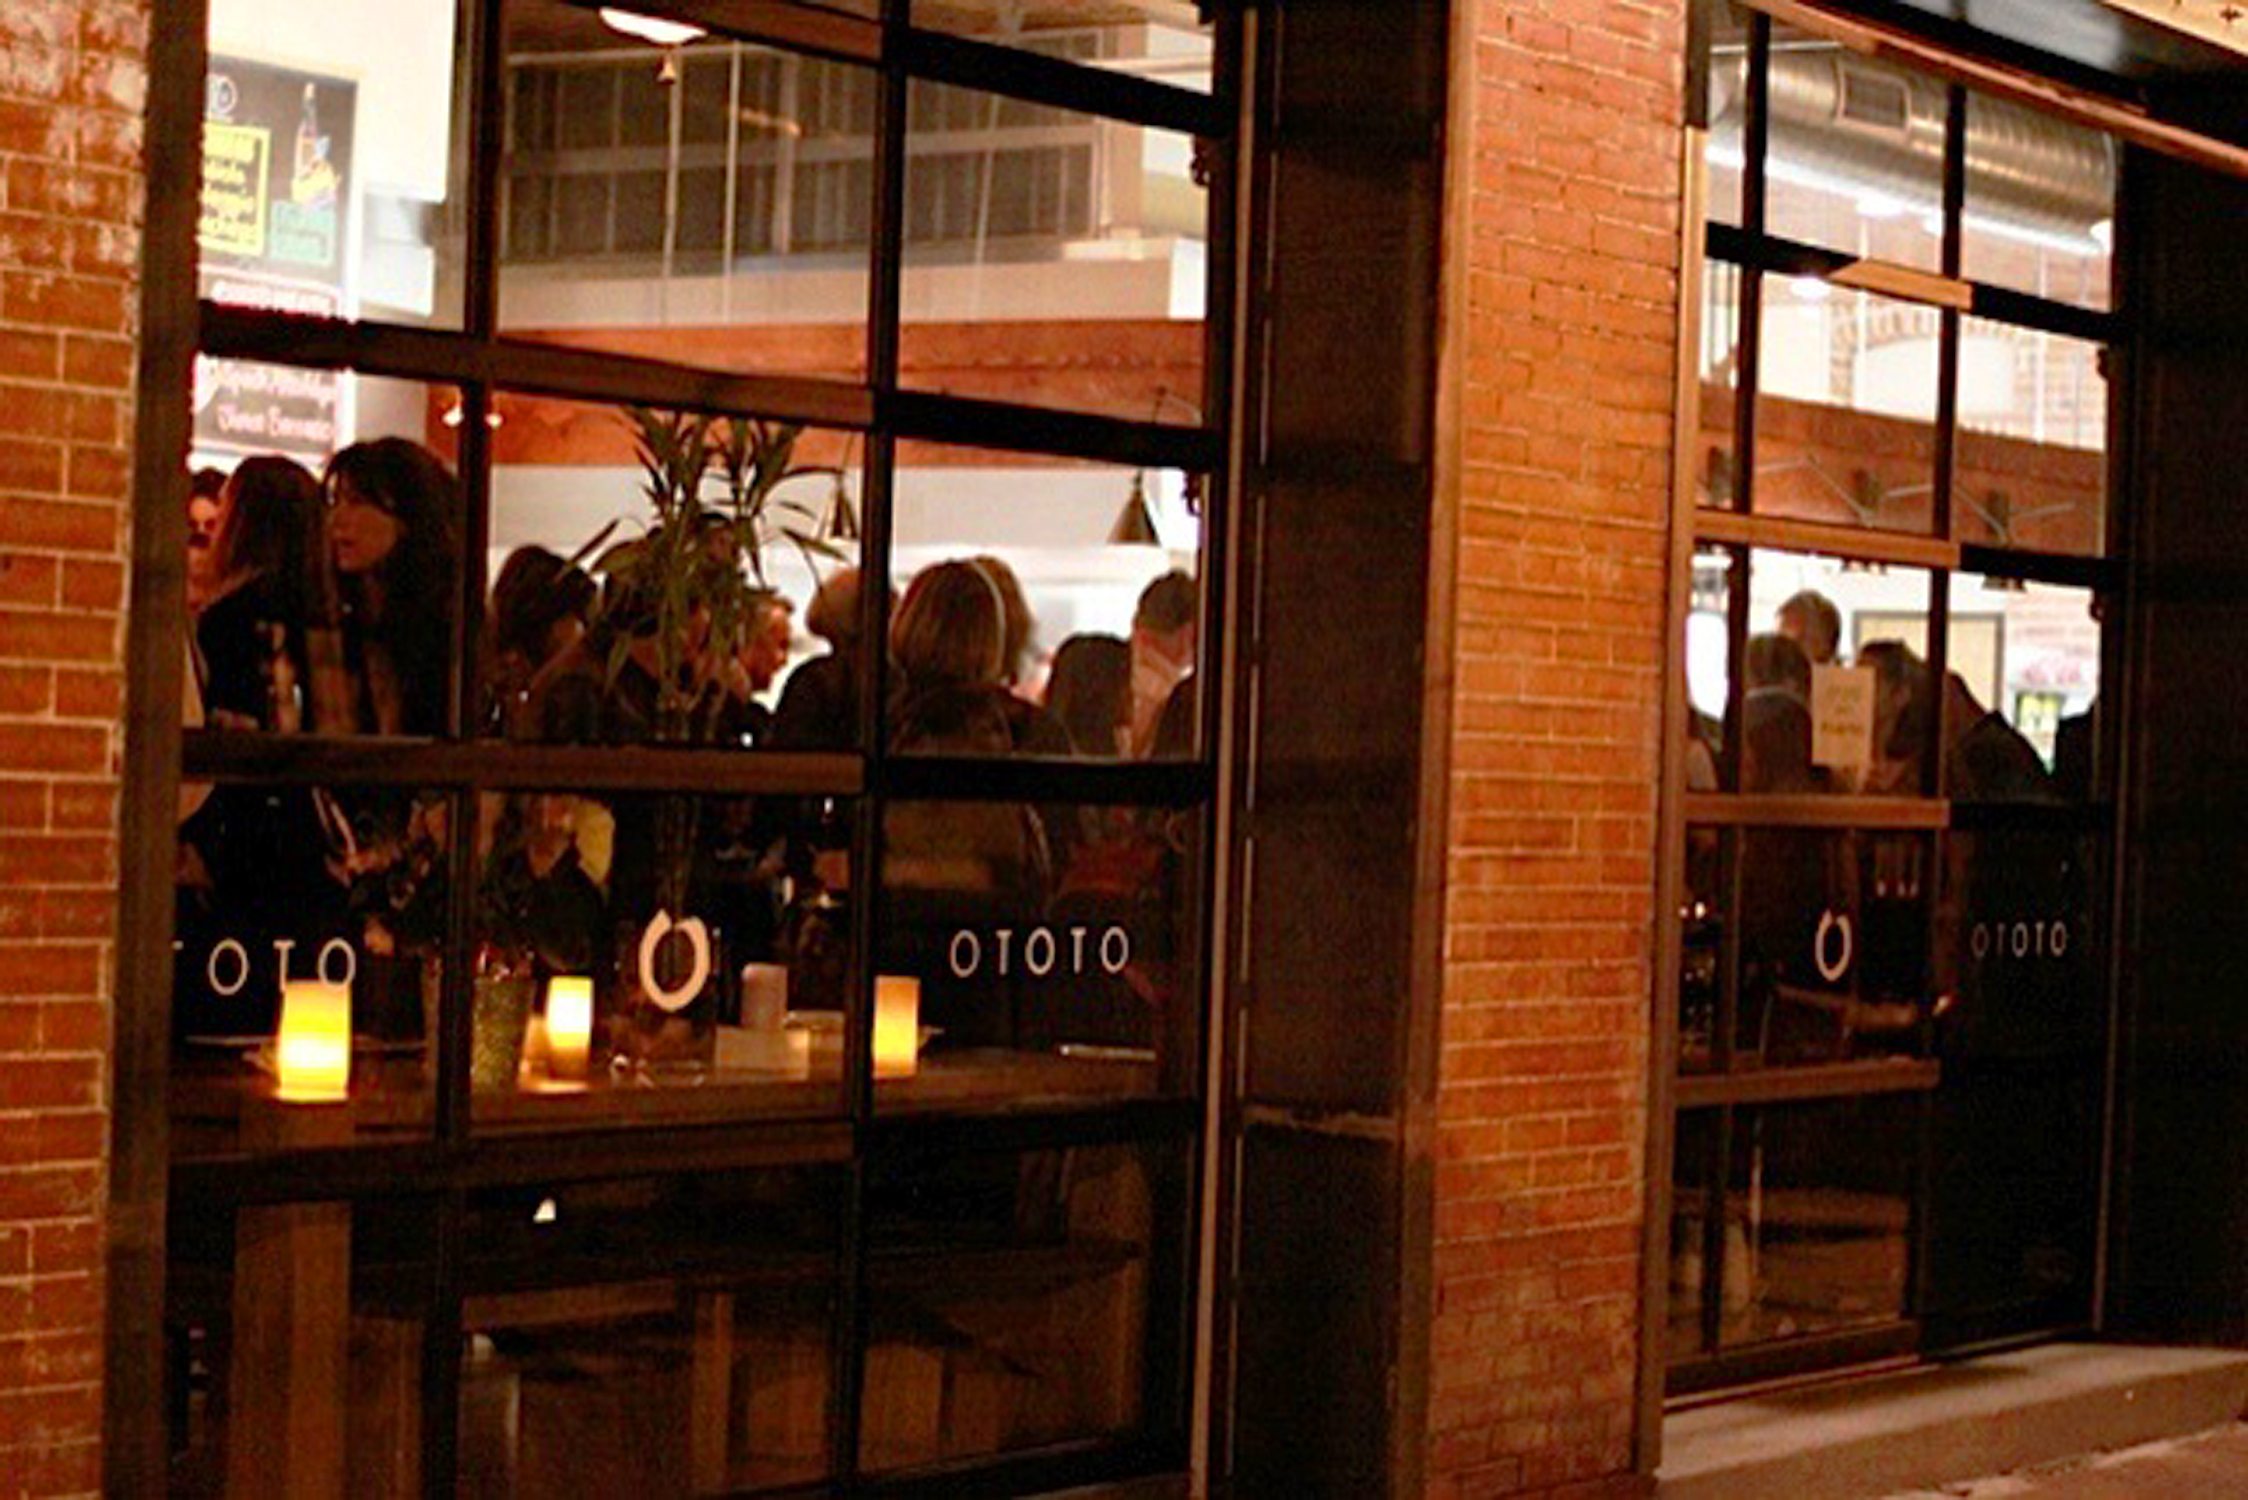 Ototo Den Denver Dining Opening - Get Ink PR